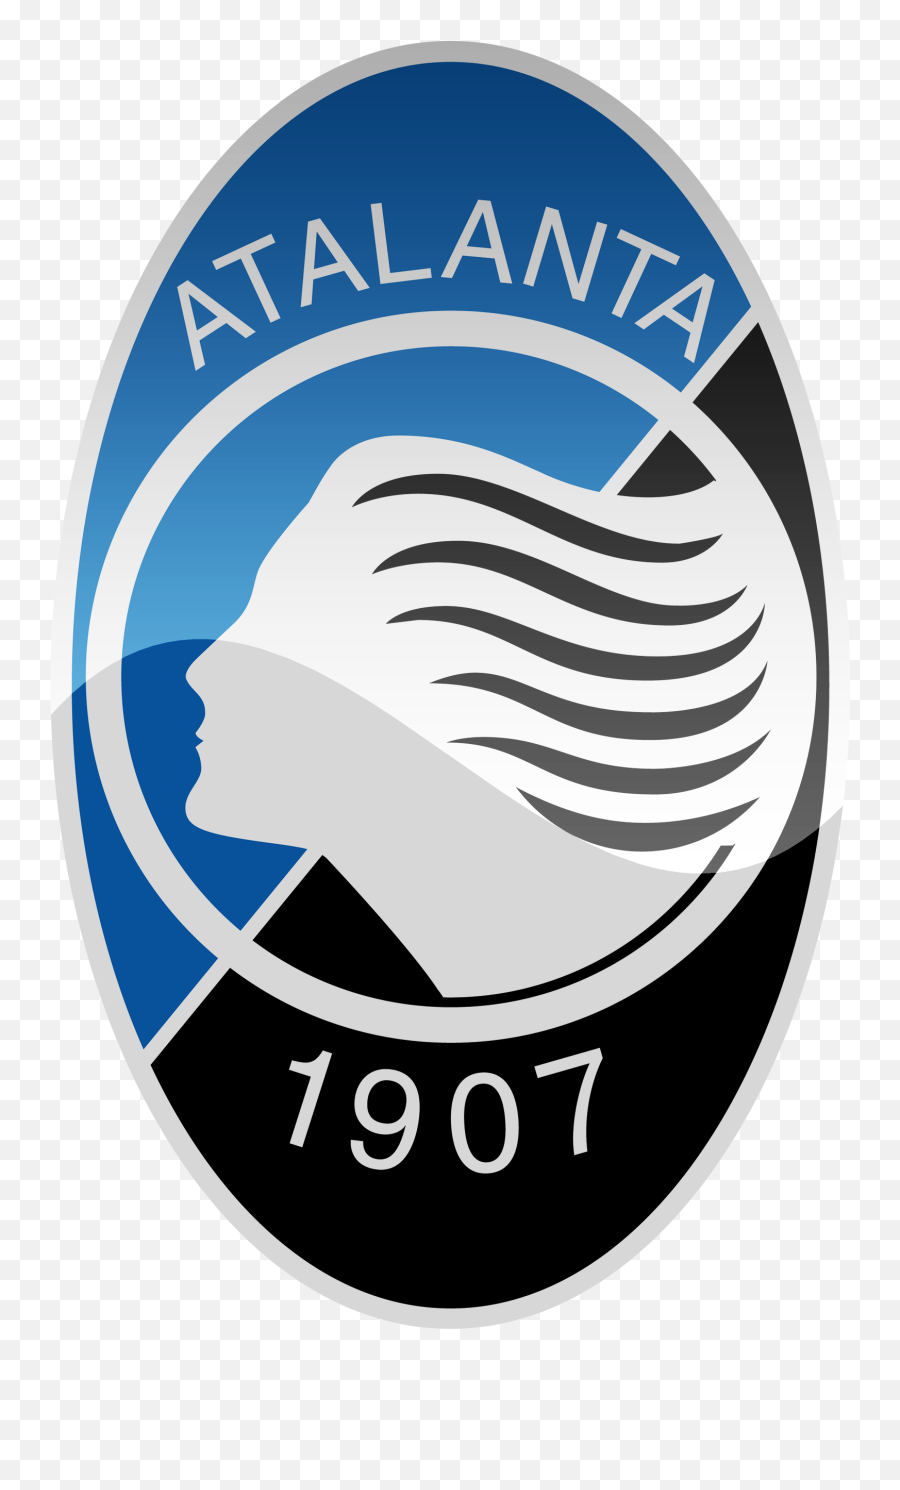 Atalanta Bc Hd Logo - Serie A Clubs Logos Png,Hd Logo Png